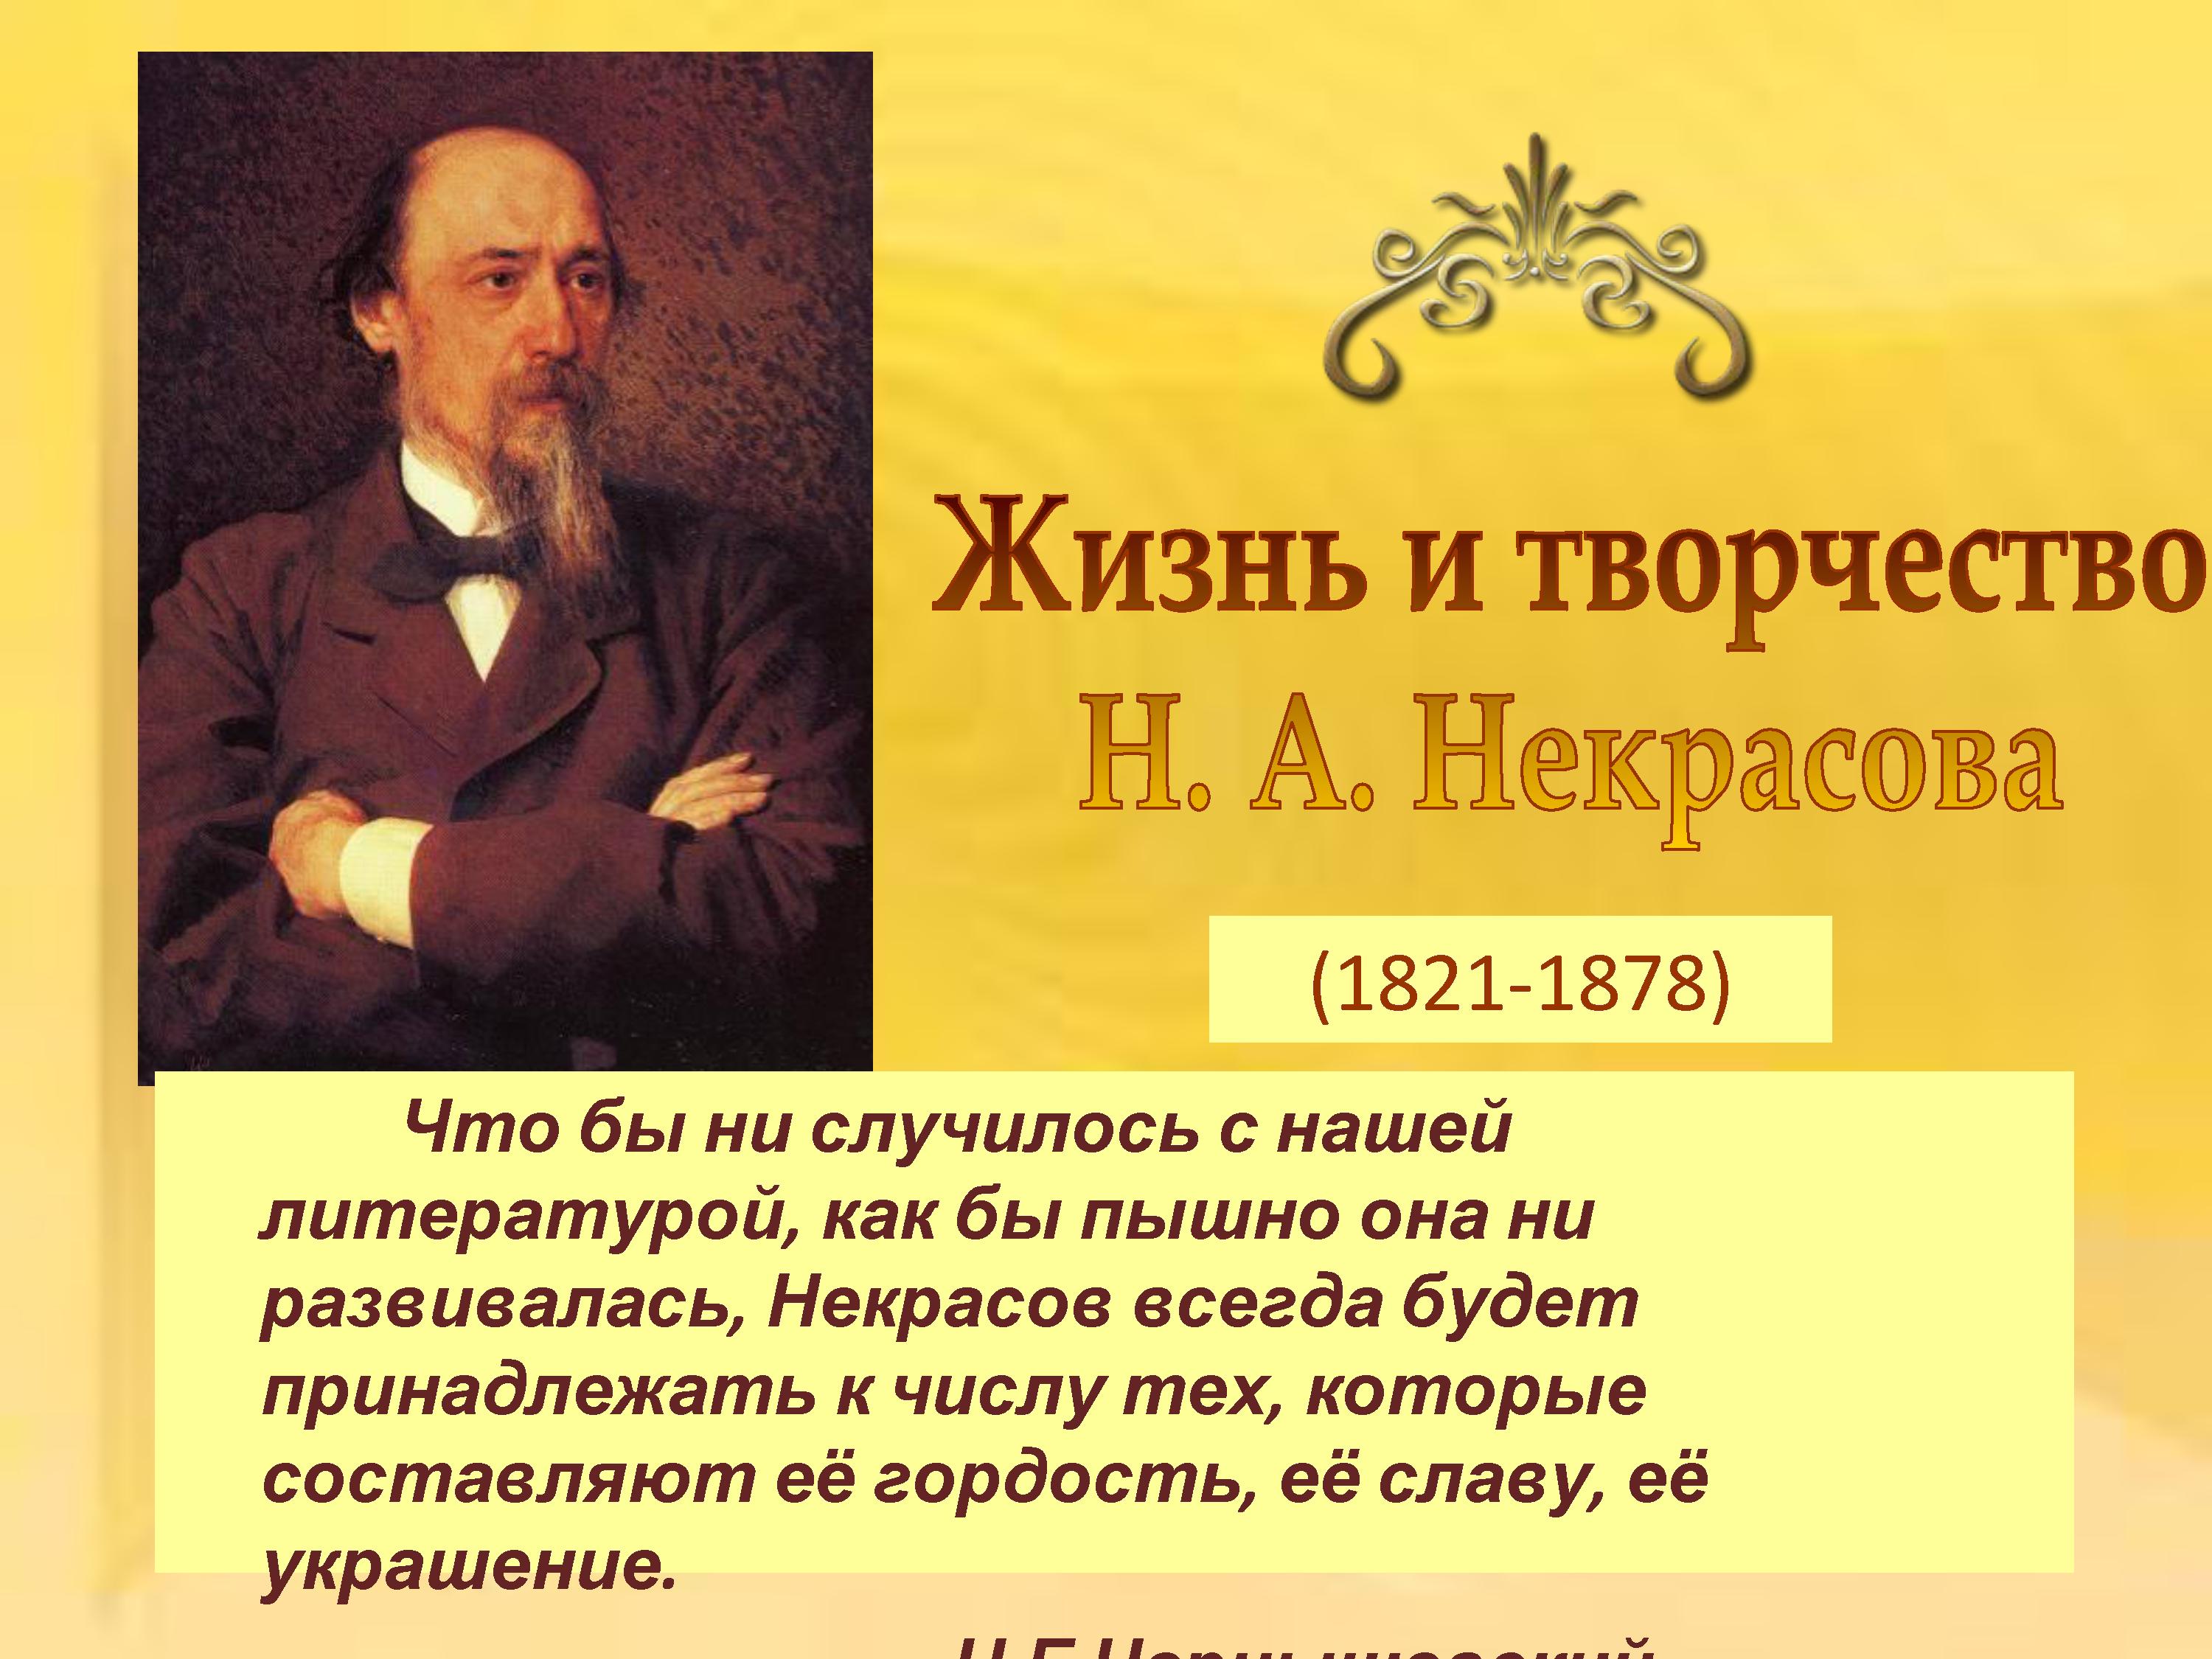 Некрасов 1821-1878